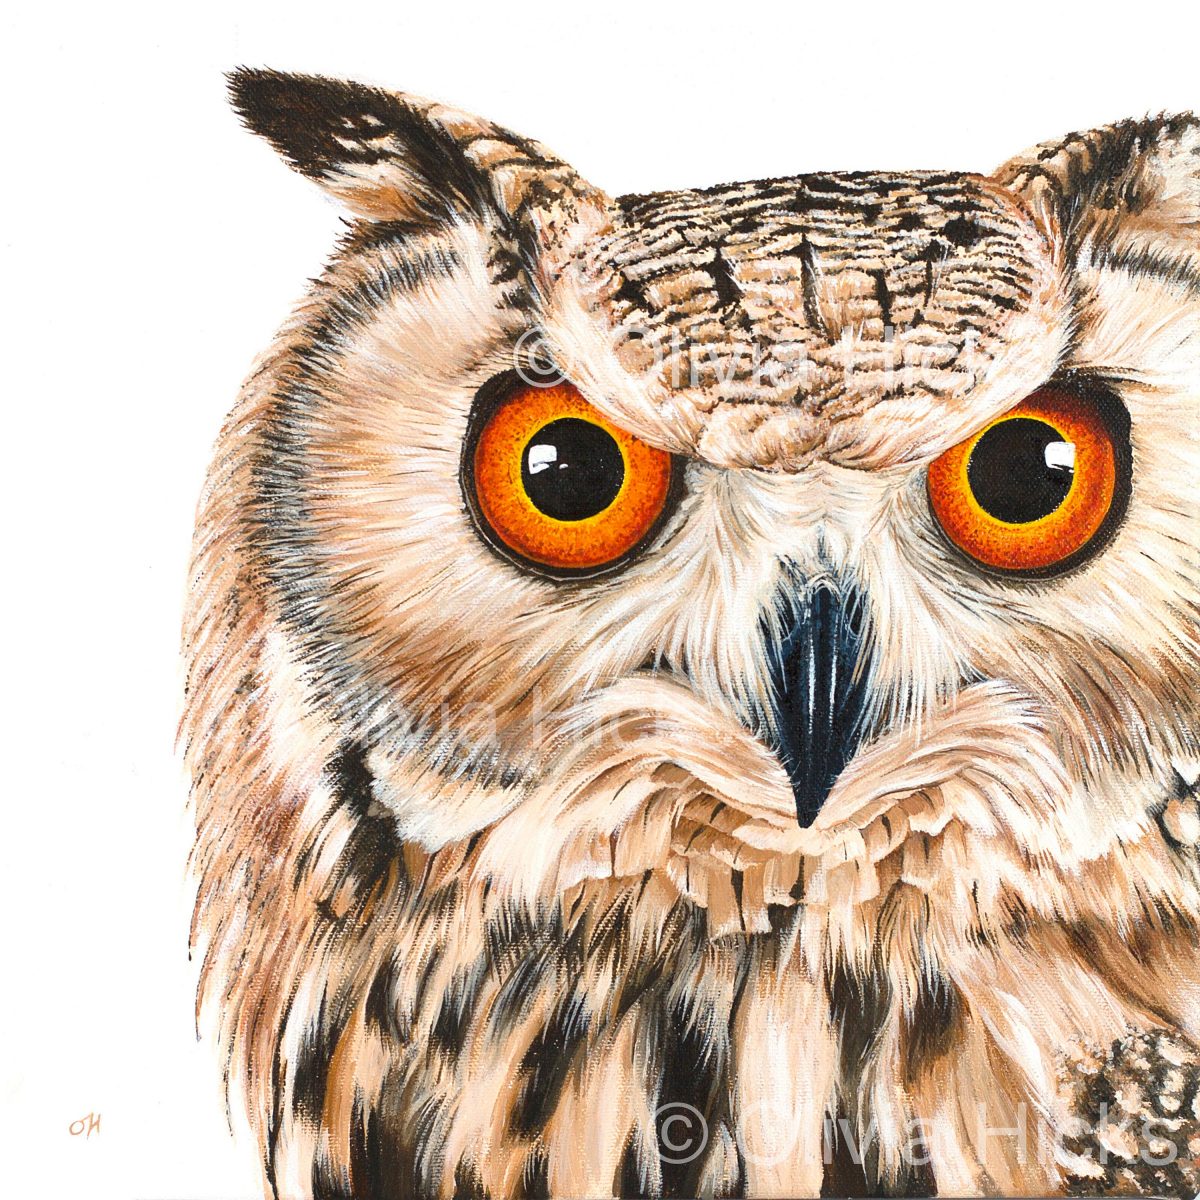 Eagle Owl - limited edition giclée canvas print